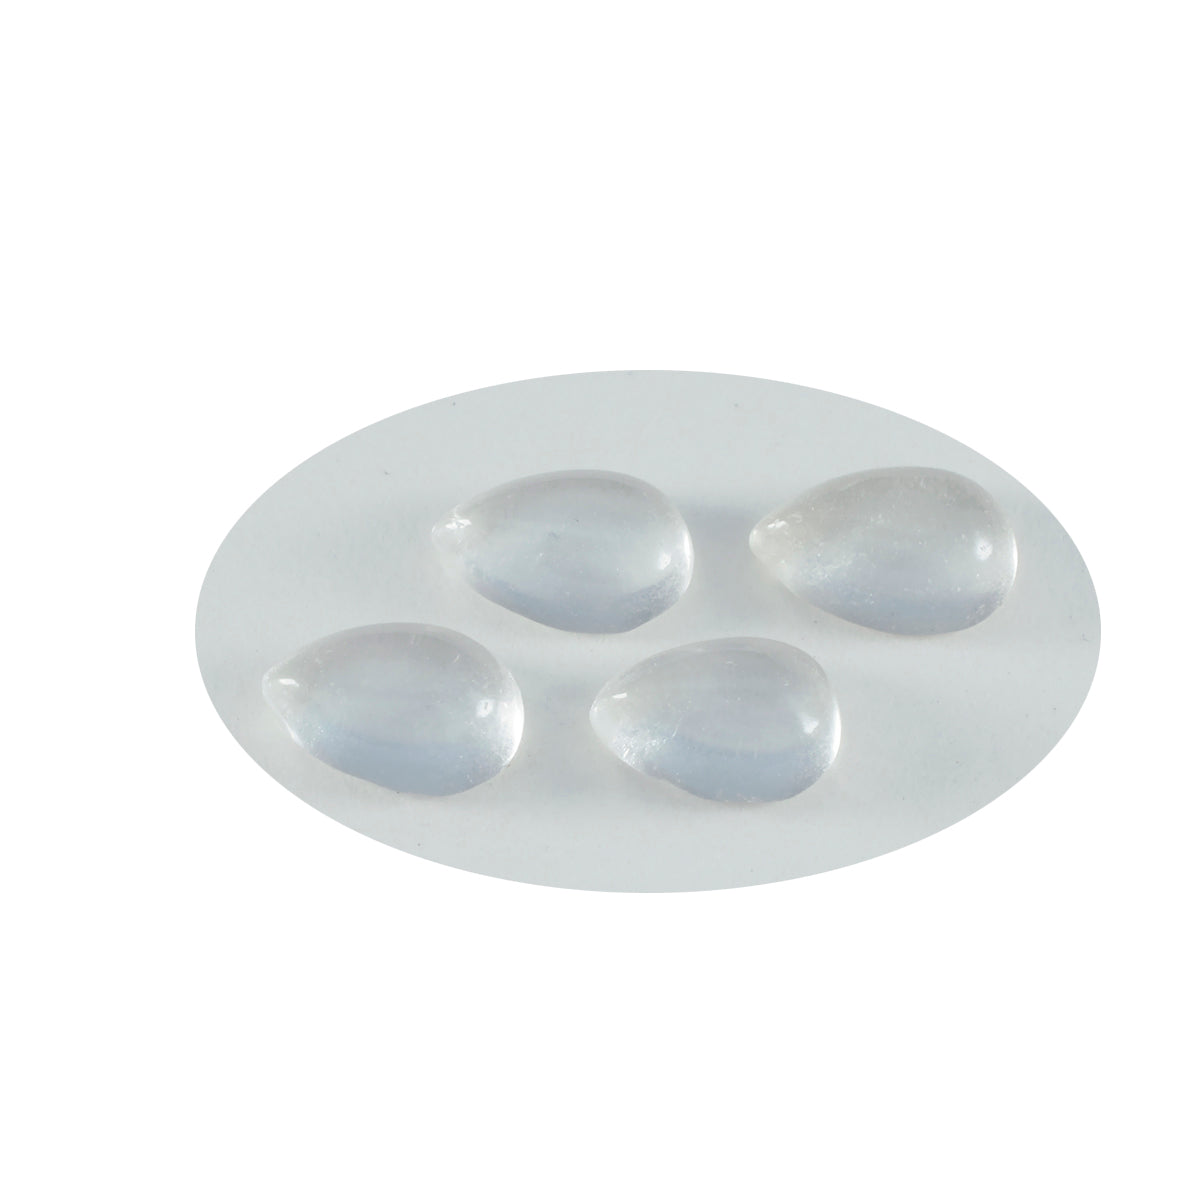 Riyogems 1 cabujón de cuarzo de cristal blanco de 10 x 14 mm con forma de pera, piedra preciosa de calidad